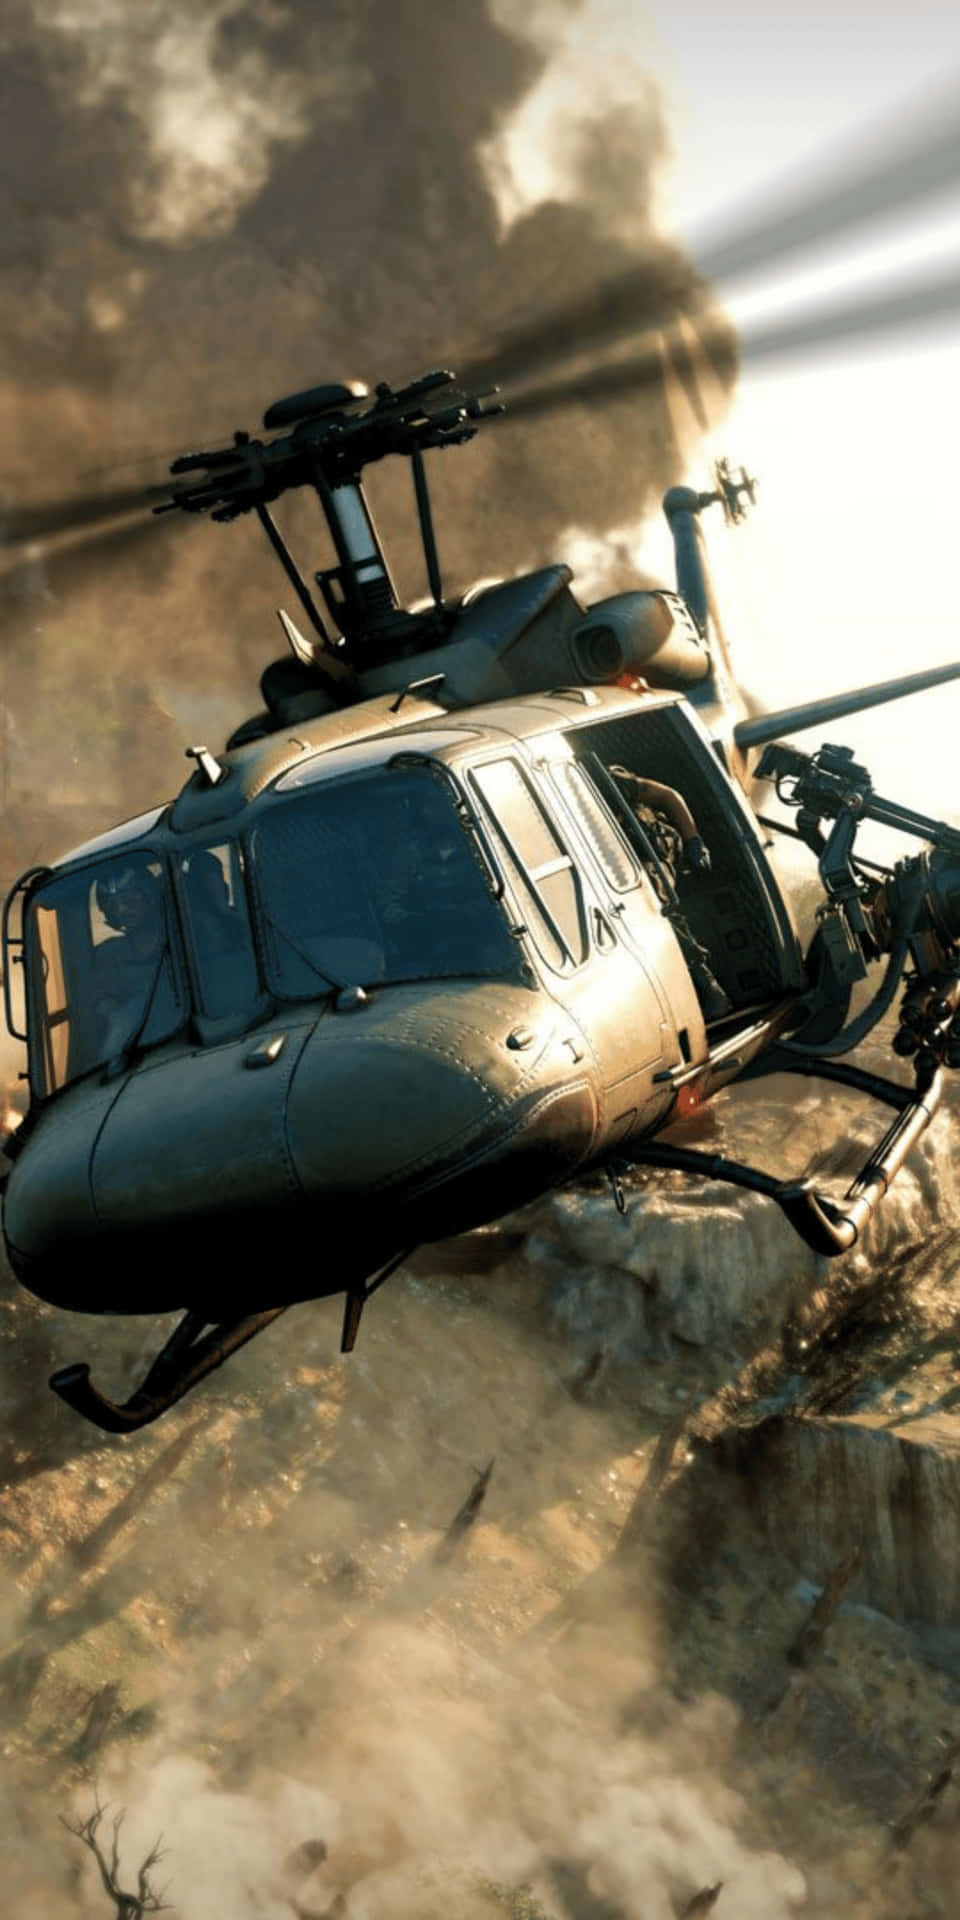 Pixel3 Call Of Duty Black Ops Cold War Bakgrundsbild Av Helikopter.